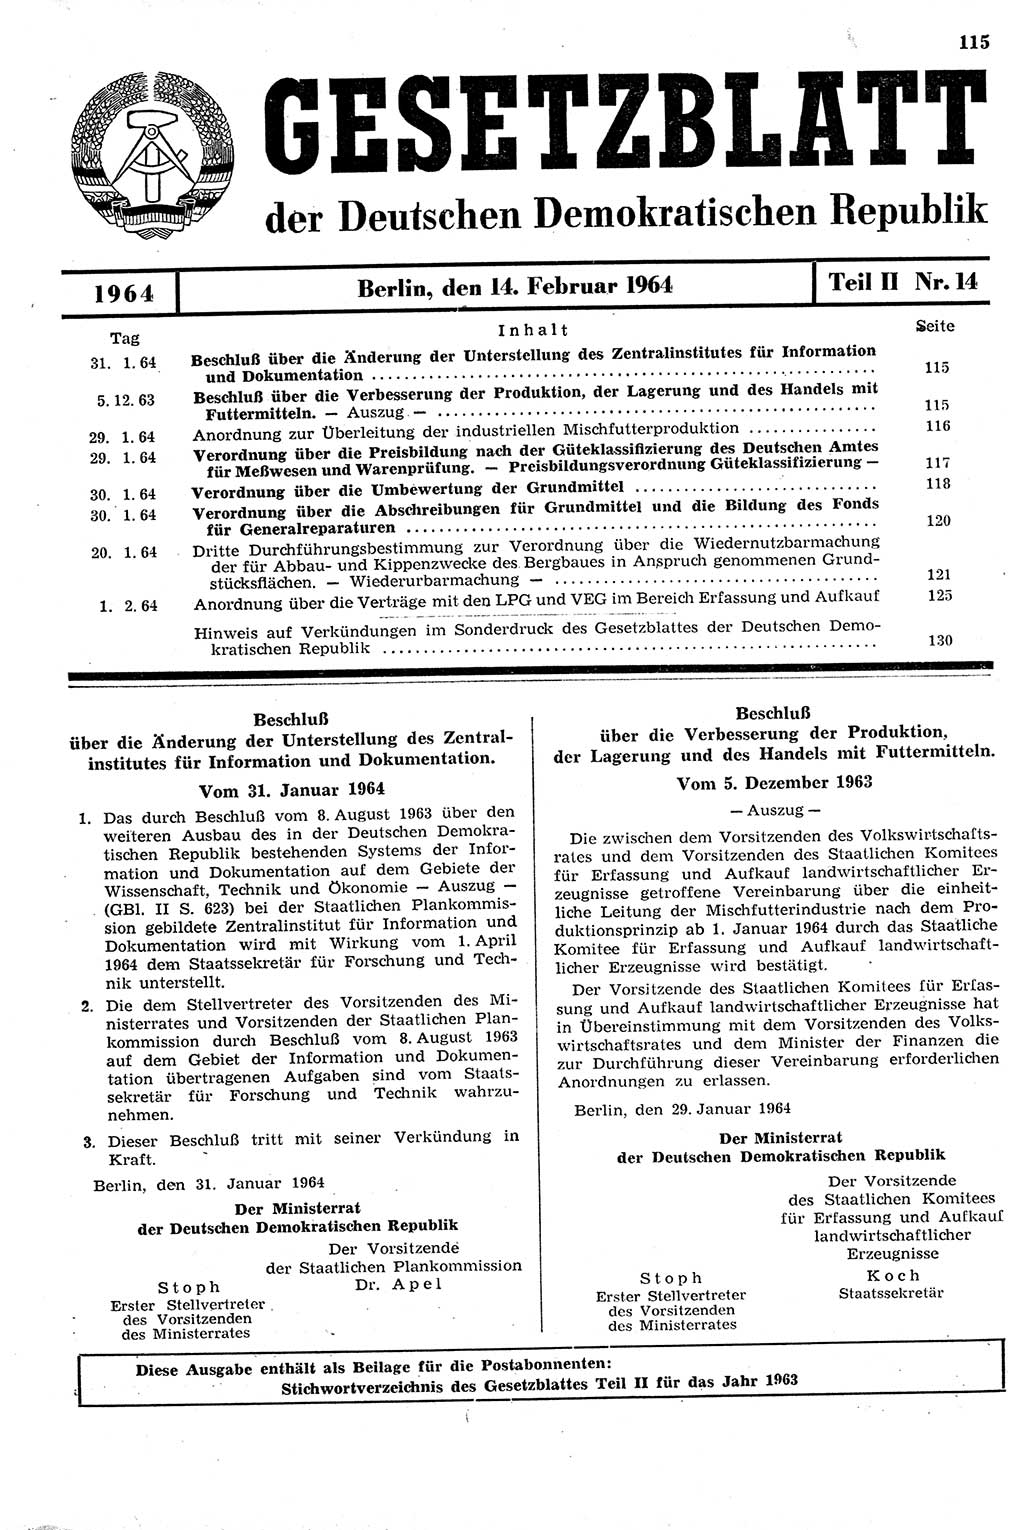 Gesetzblatt (GBl.) der Deutschen Demokratischen Republik (DDR) Teil ⅠⅠ 1964, Seite 115 (GBl. DDR ⅠⅠ 1964, S. 115)